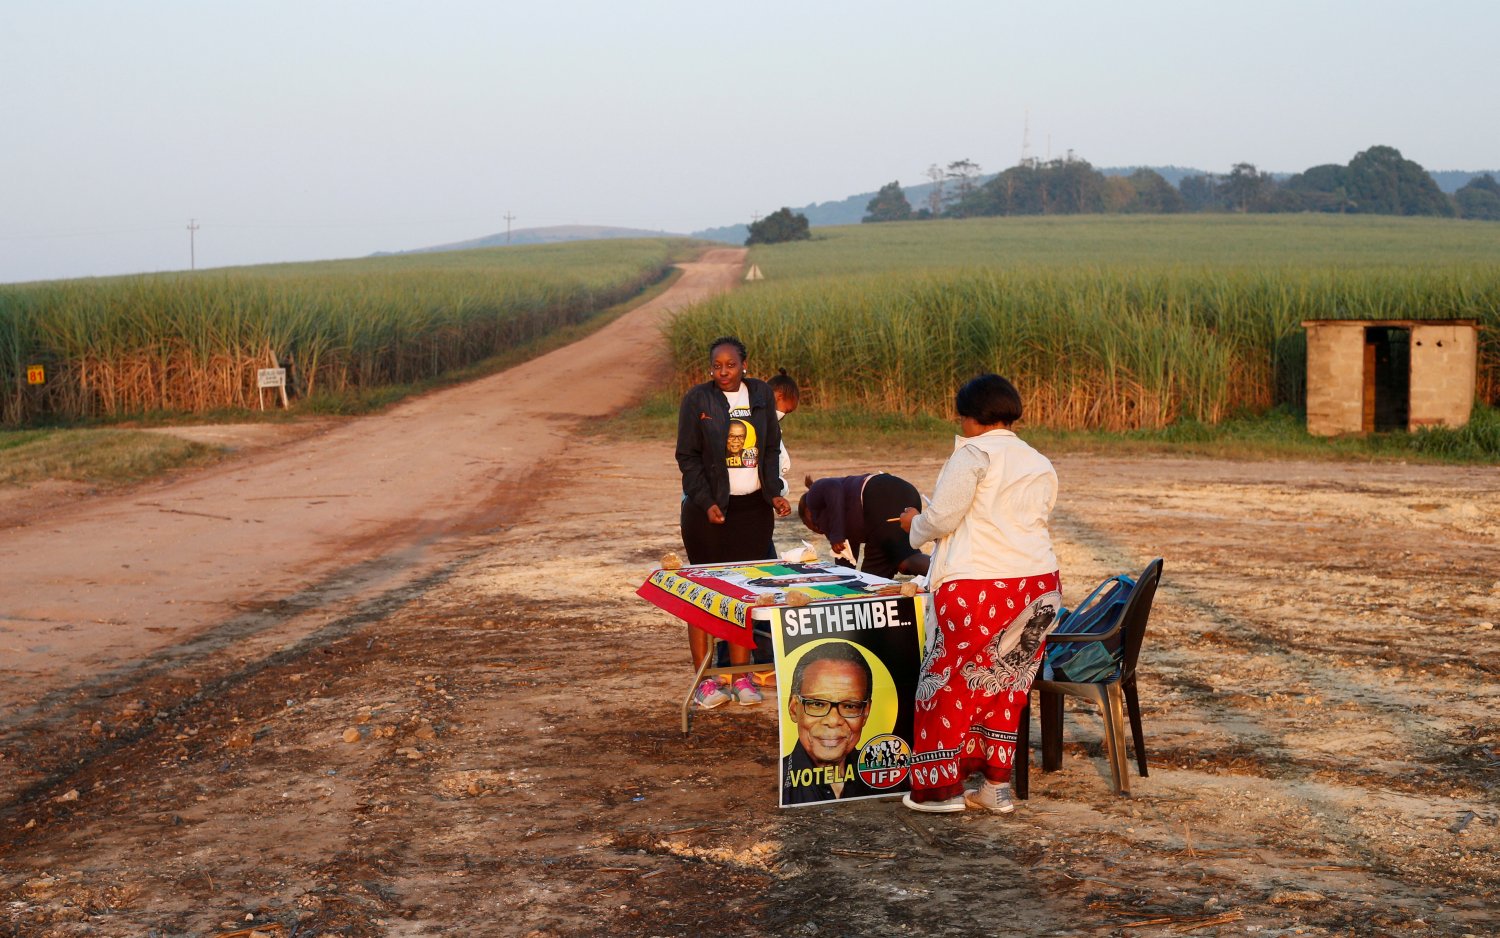 Agentes del Partido Inkatha Libertad cerca de una mesa electoral antes de las elecciones parlamentarias y provinciales de Sudáfrica en las Tierras agrícolas cerca de Eshowe, Sudáfrica